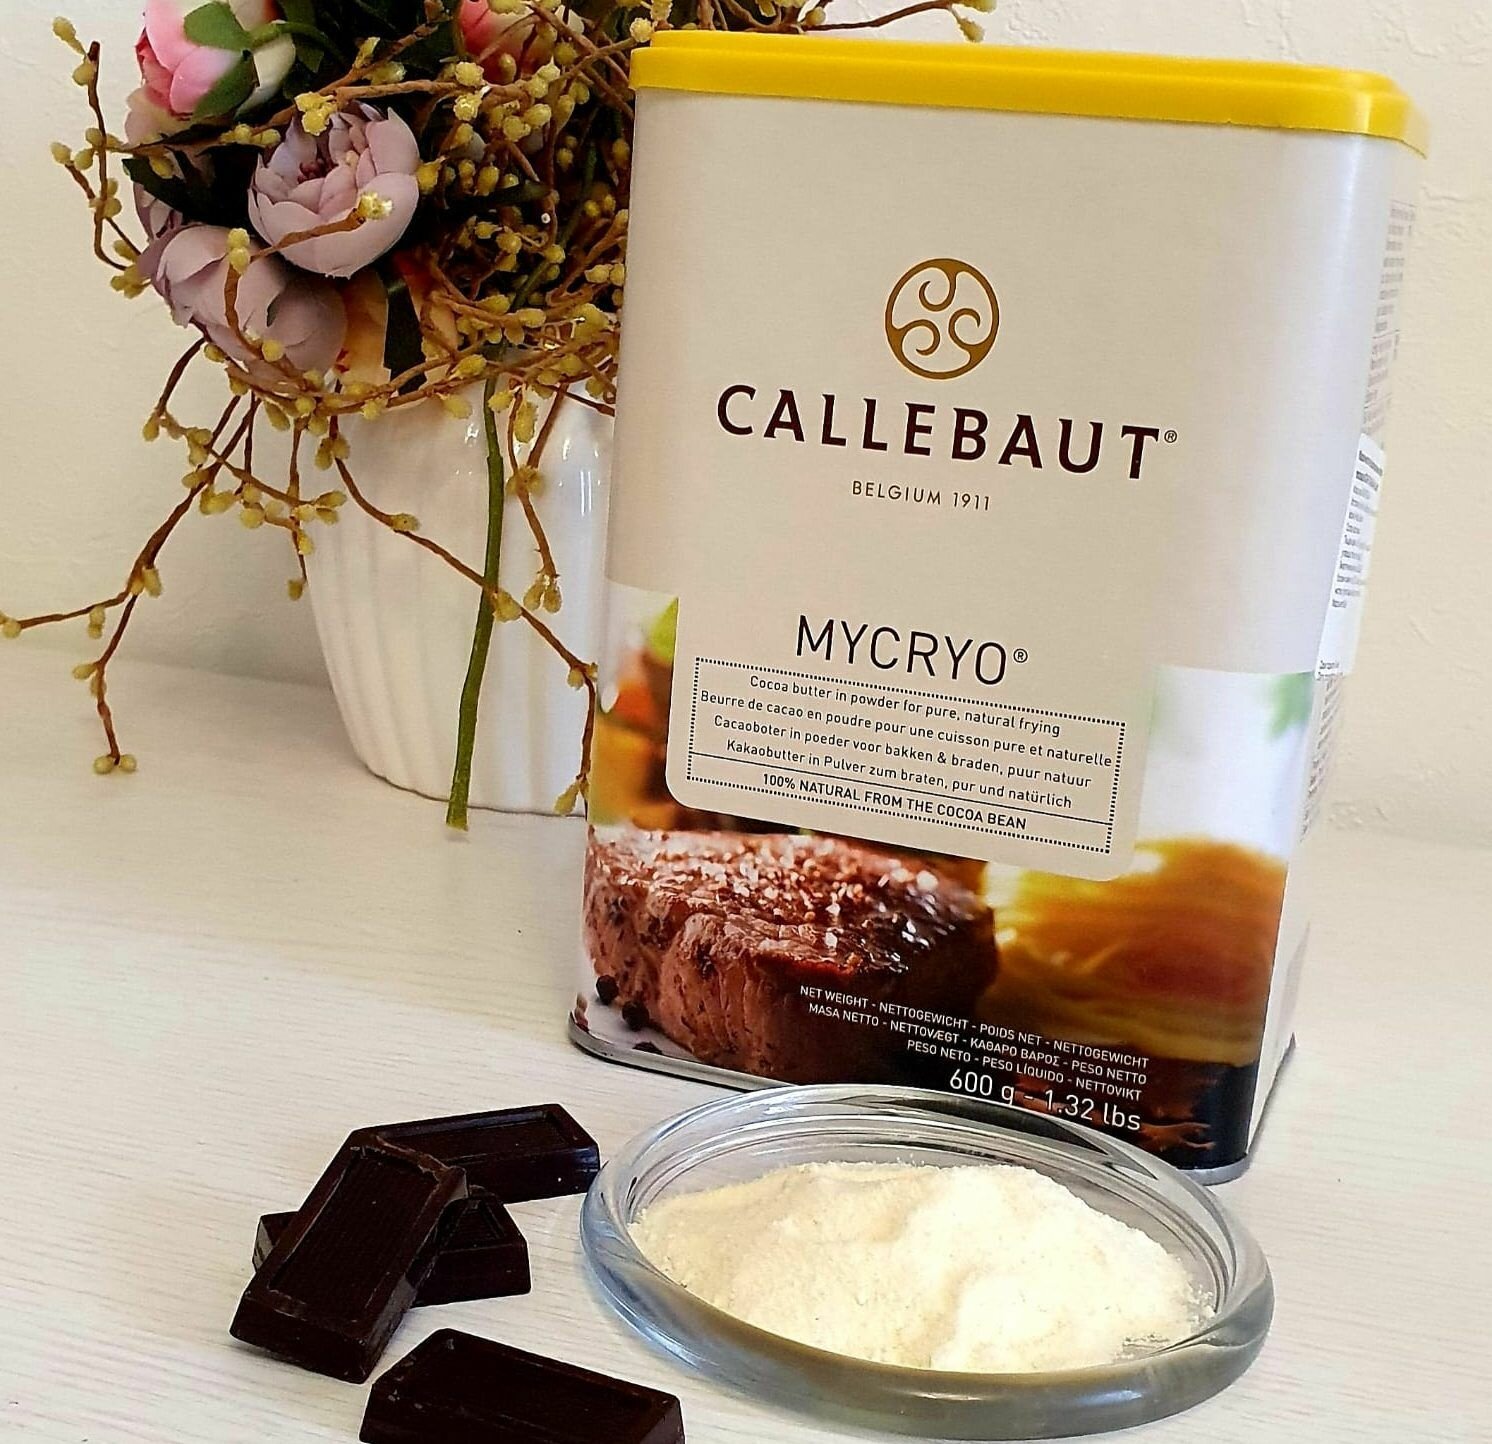 Микрио callebaut